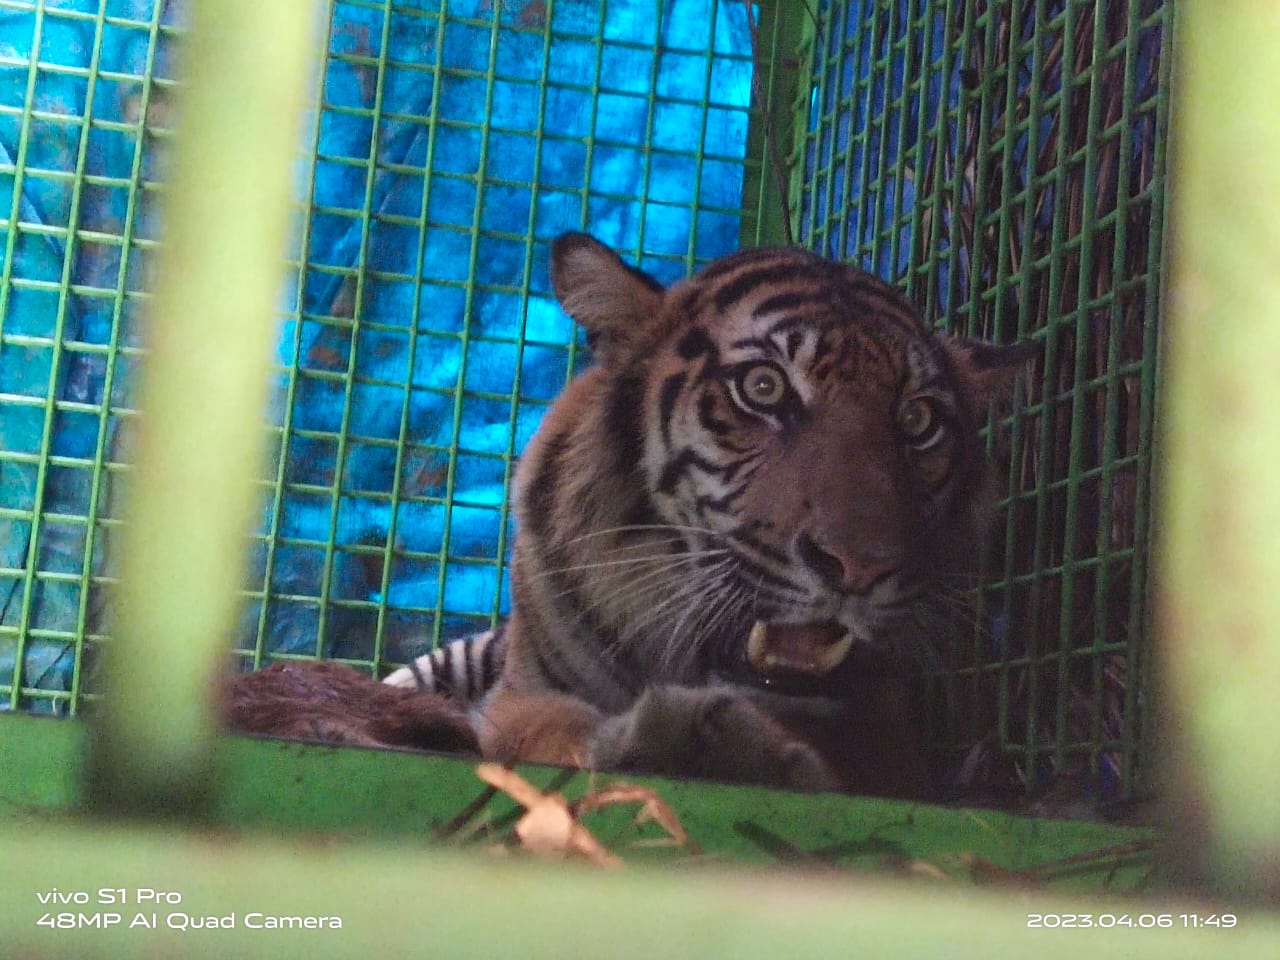 Harimau Sumatera Berkaki Buntung Tertangkap di Mukomuko, Diduga Sudah Memangsa Ternak Warga